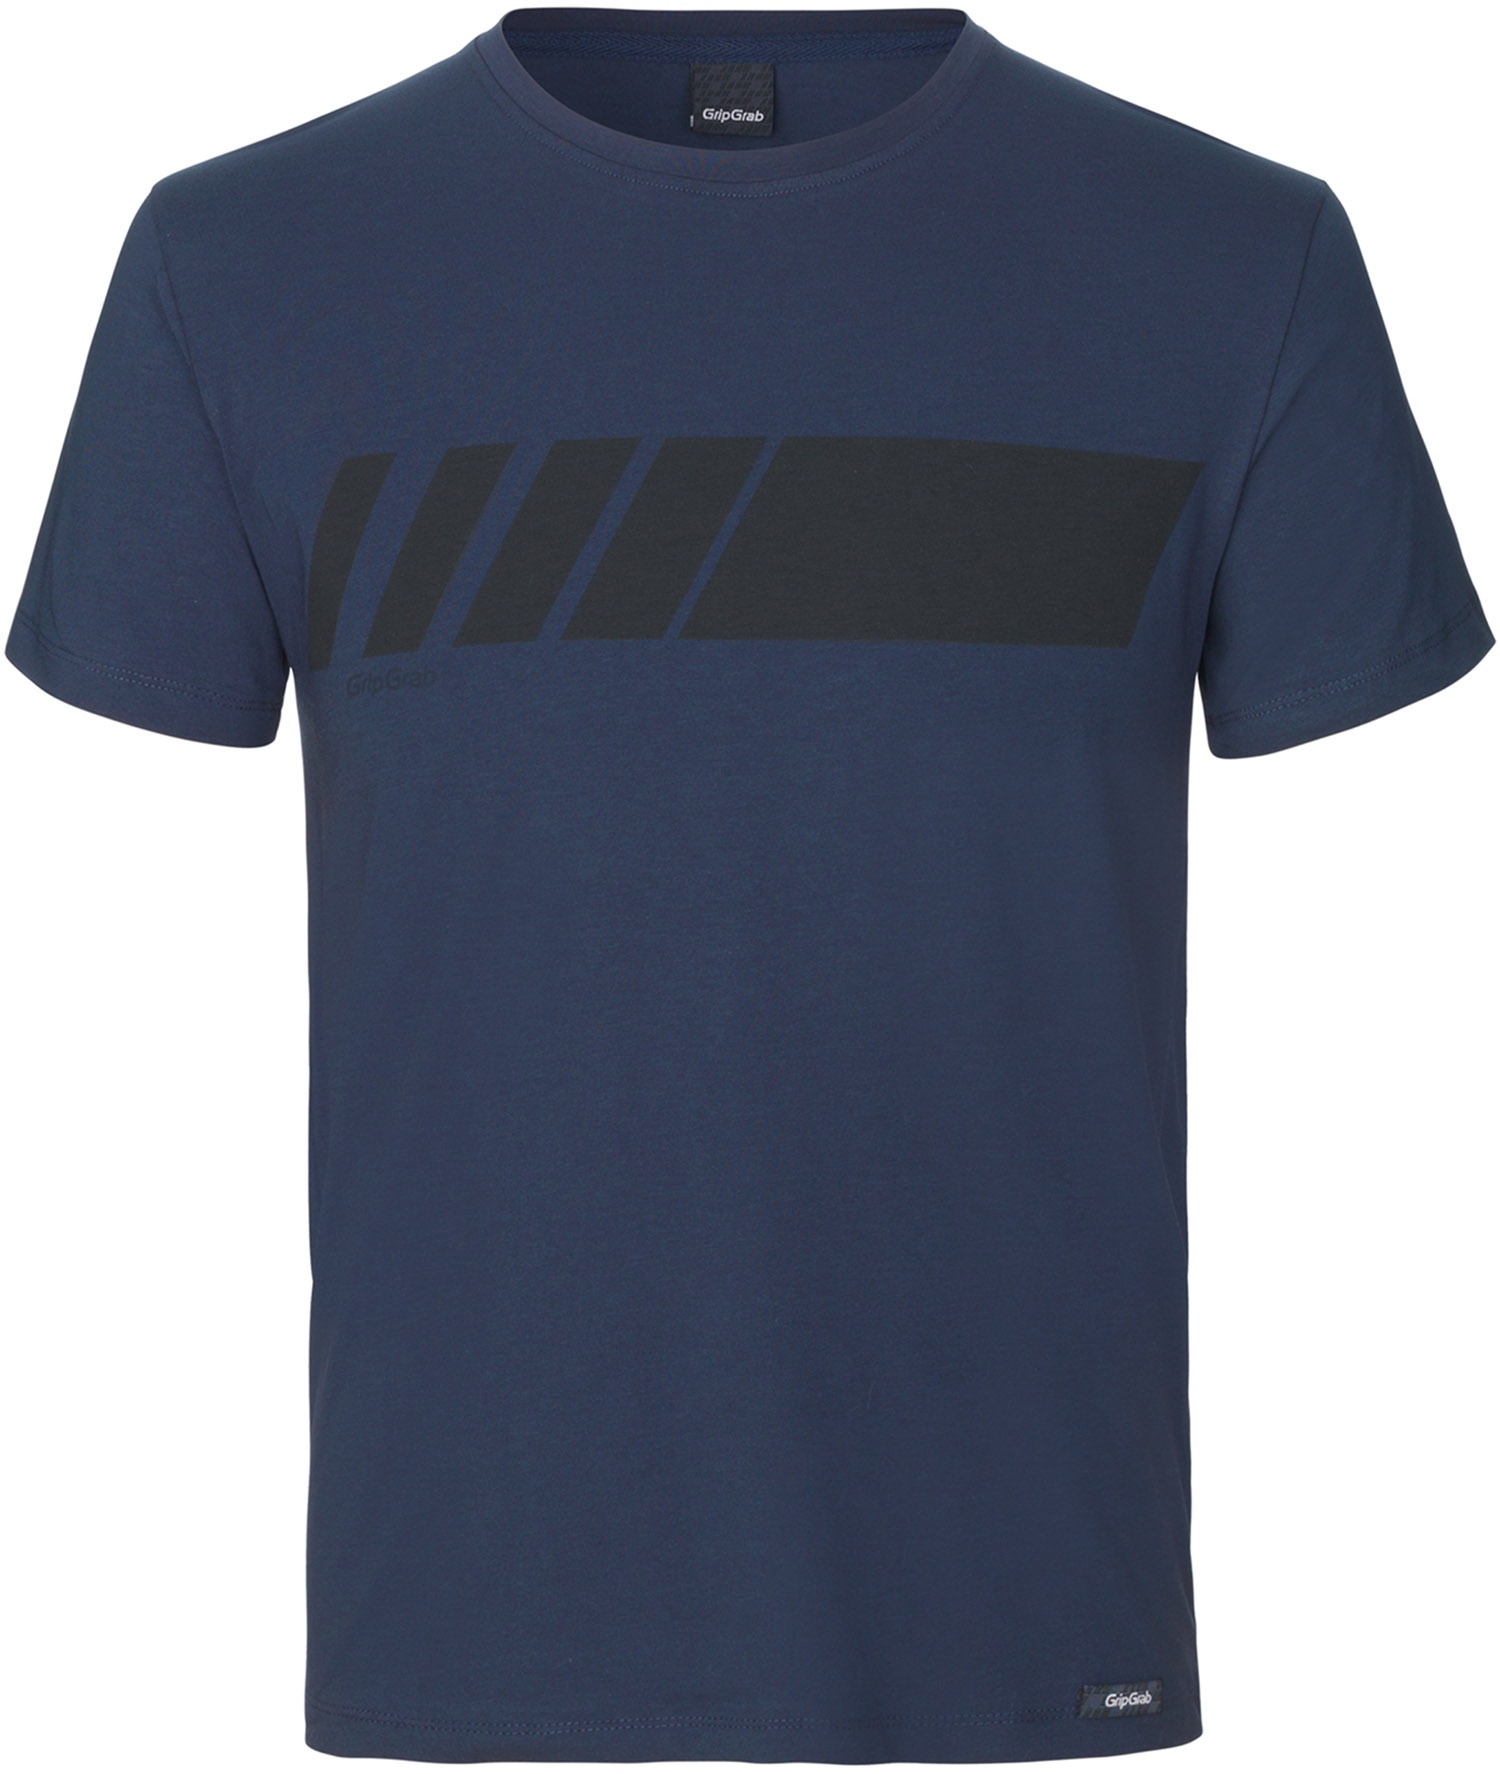 Beklædning - Merchandise - GripGrab Racing Stripe Kortærmet Økologisk Bomulds-T-shirt - Blå